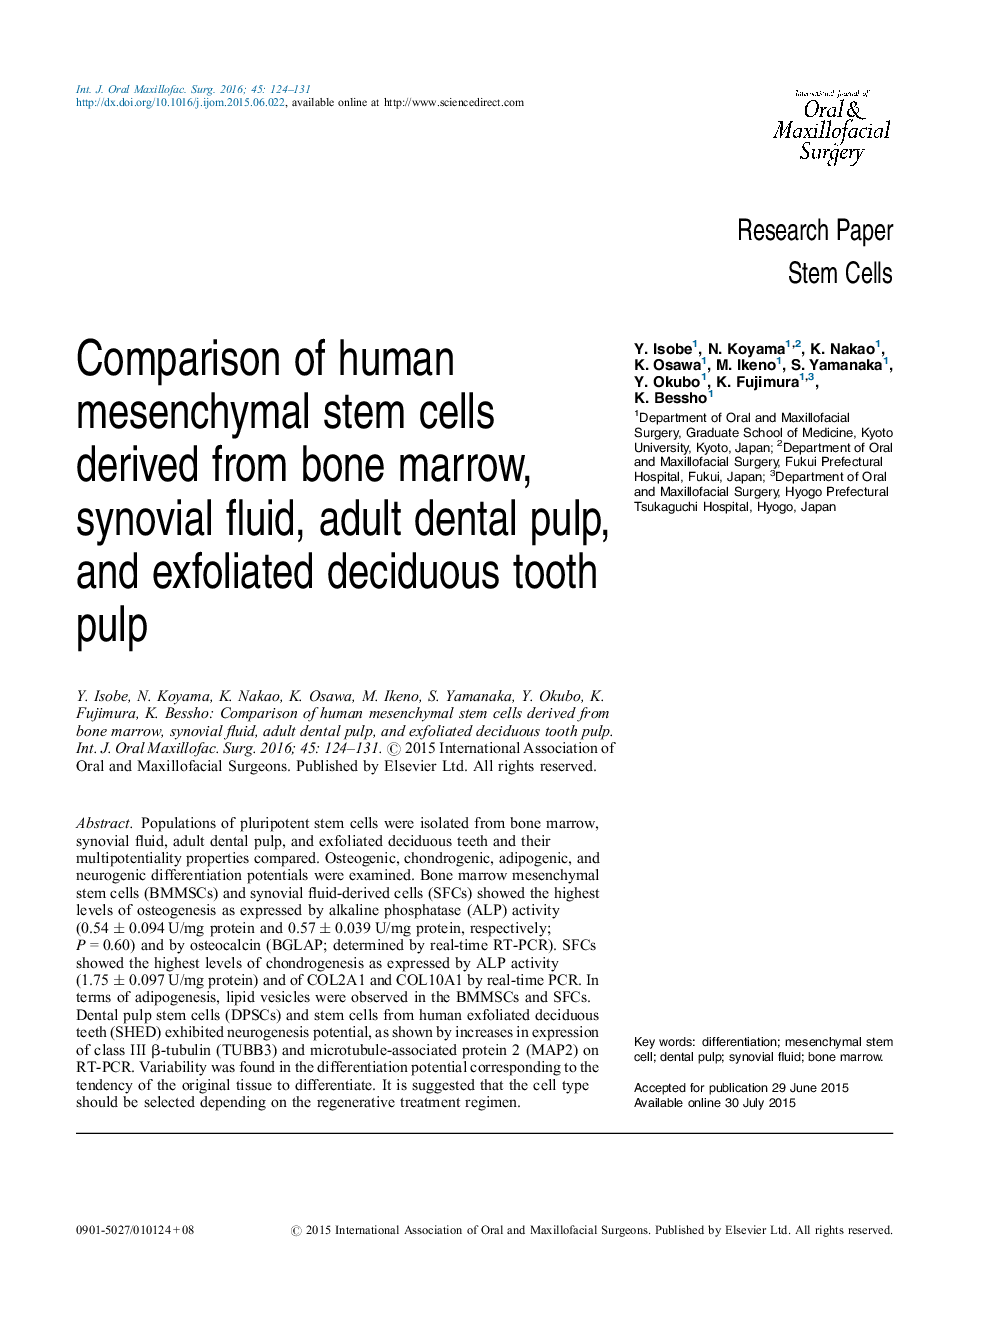 مقایسه سلولهای بنیادی مزانشیمی انسانی که از مغز استخوان، مایع سینوویال، پالپ دندان بزرگسال و پالپ دندان چسبنده 